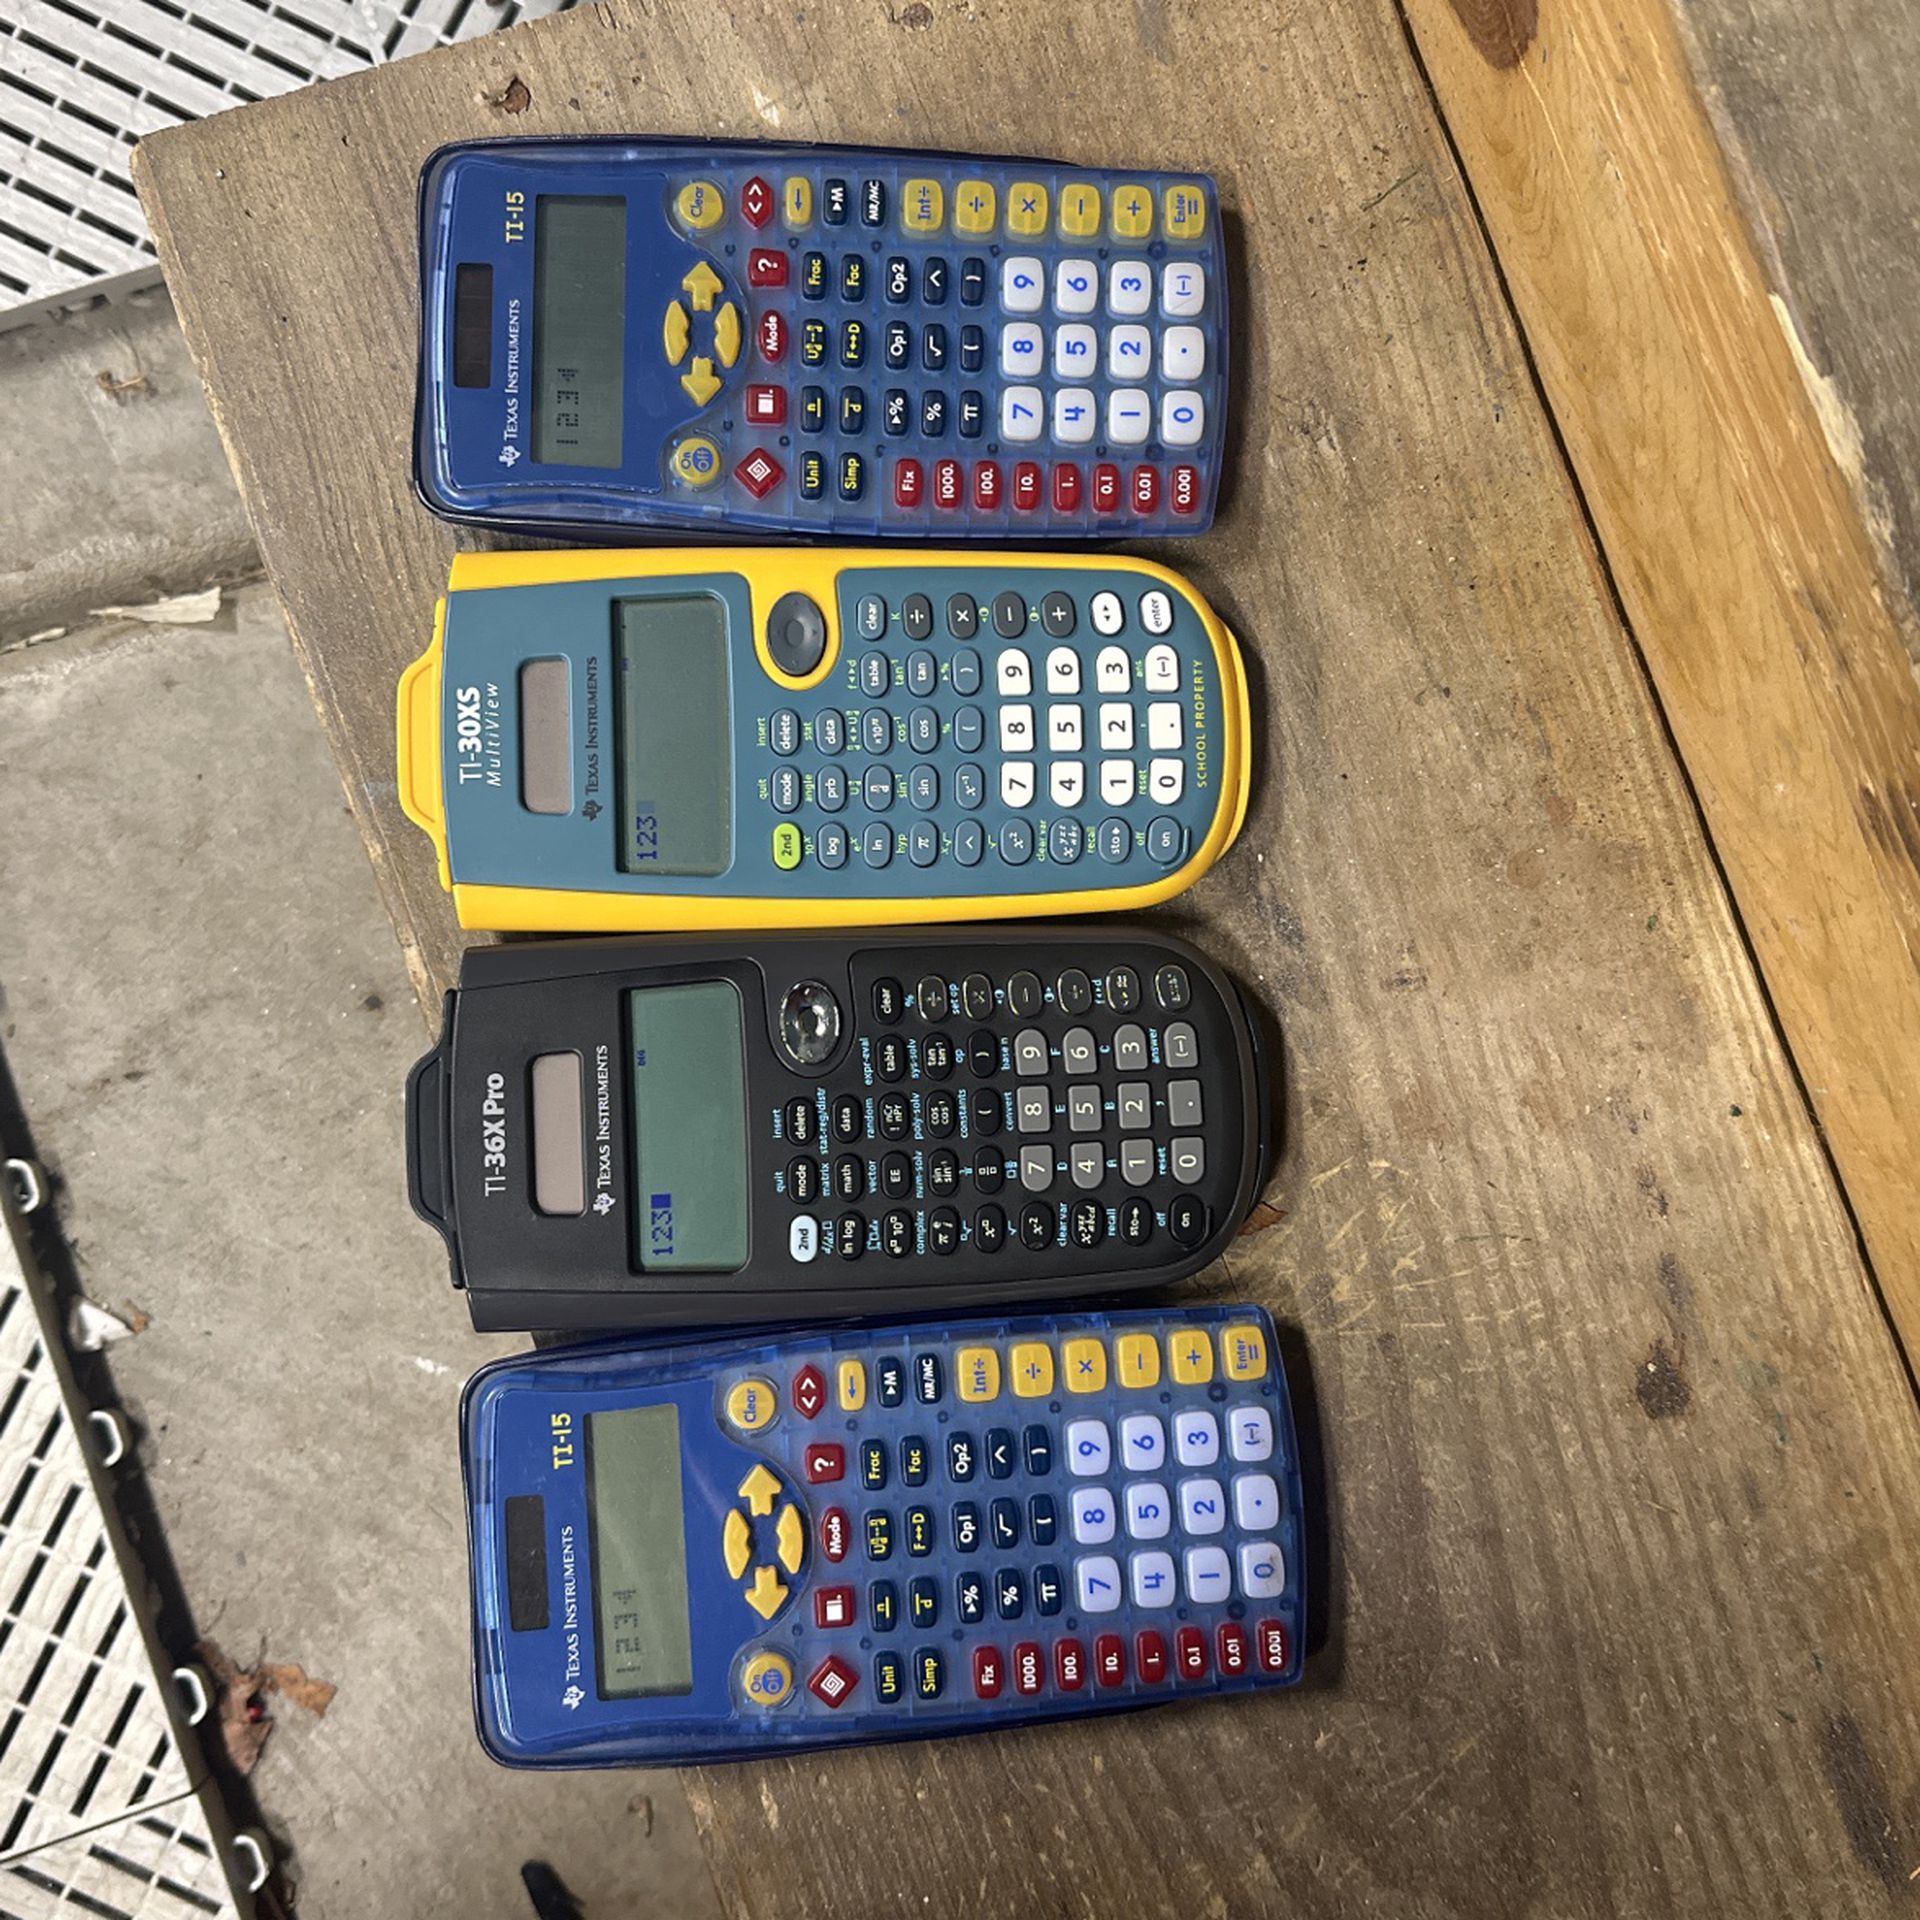 Texas instruments calculators